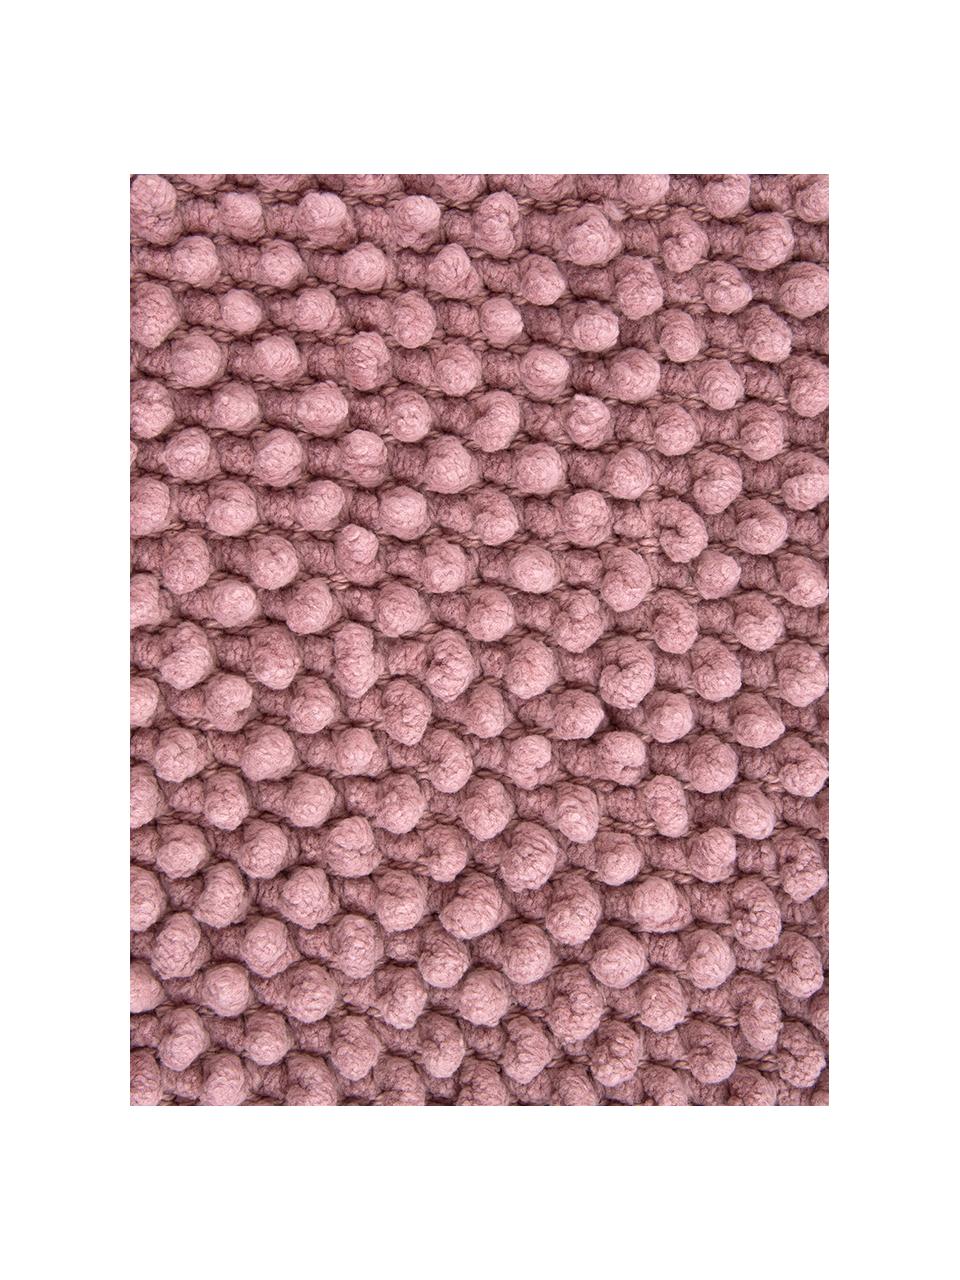 Federa arredo in cotone rosa cipria Indi, 100% cotone, Rosa cipria, Larg. 45 x Lung. 45 cm